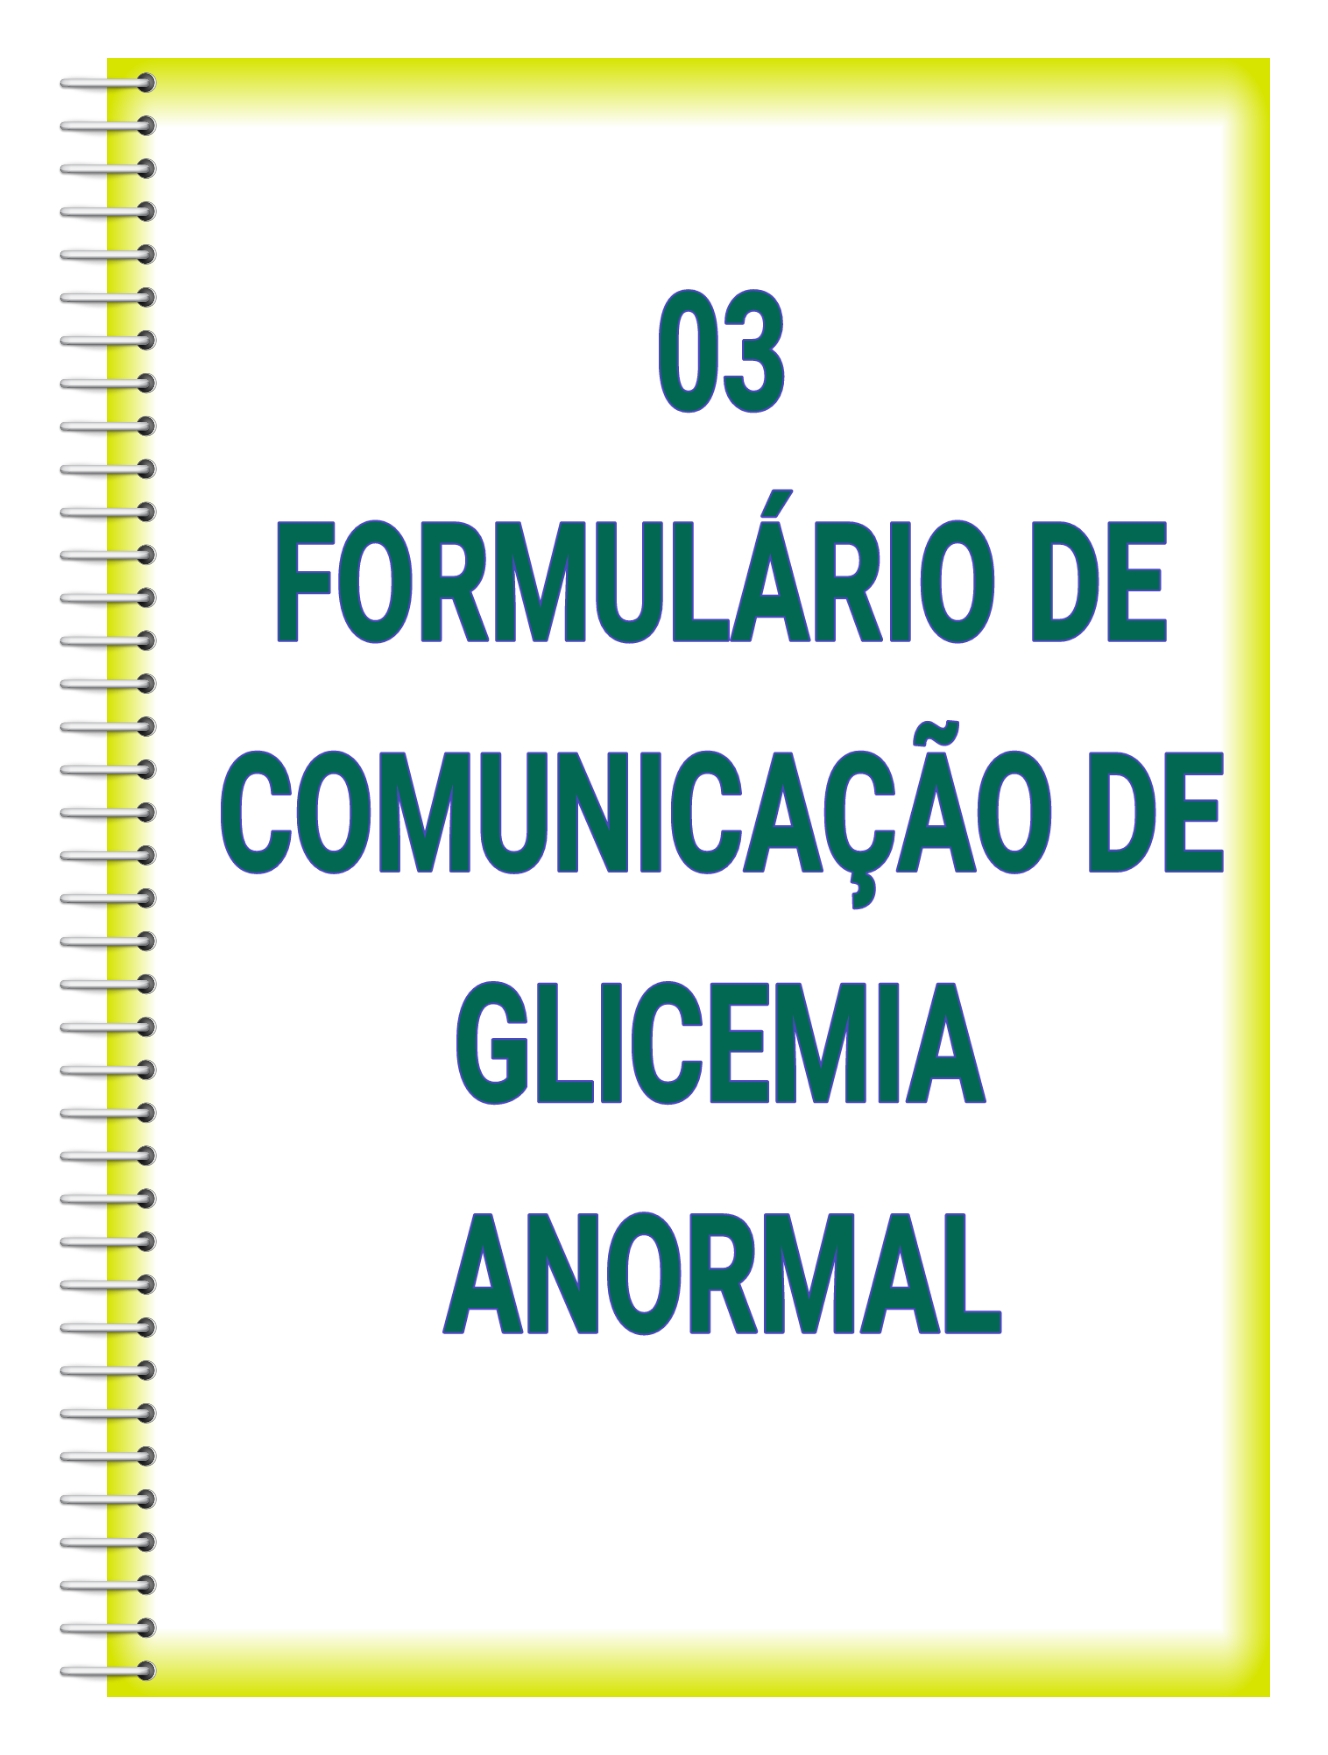 Formulario da Glicemia Anormal